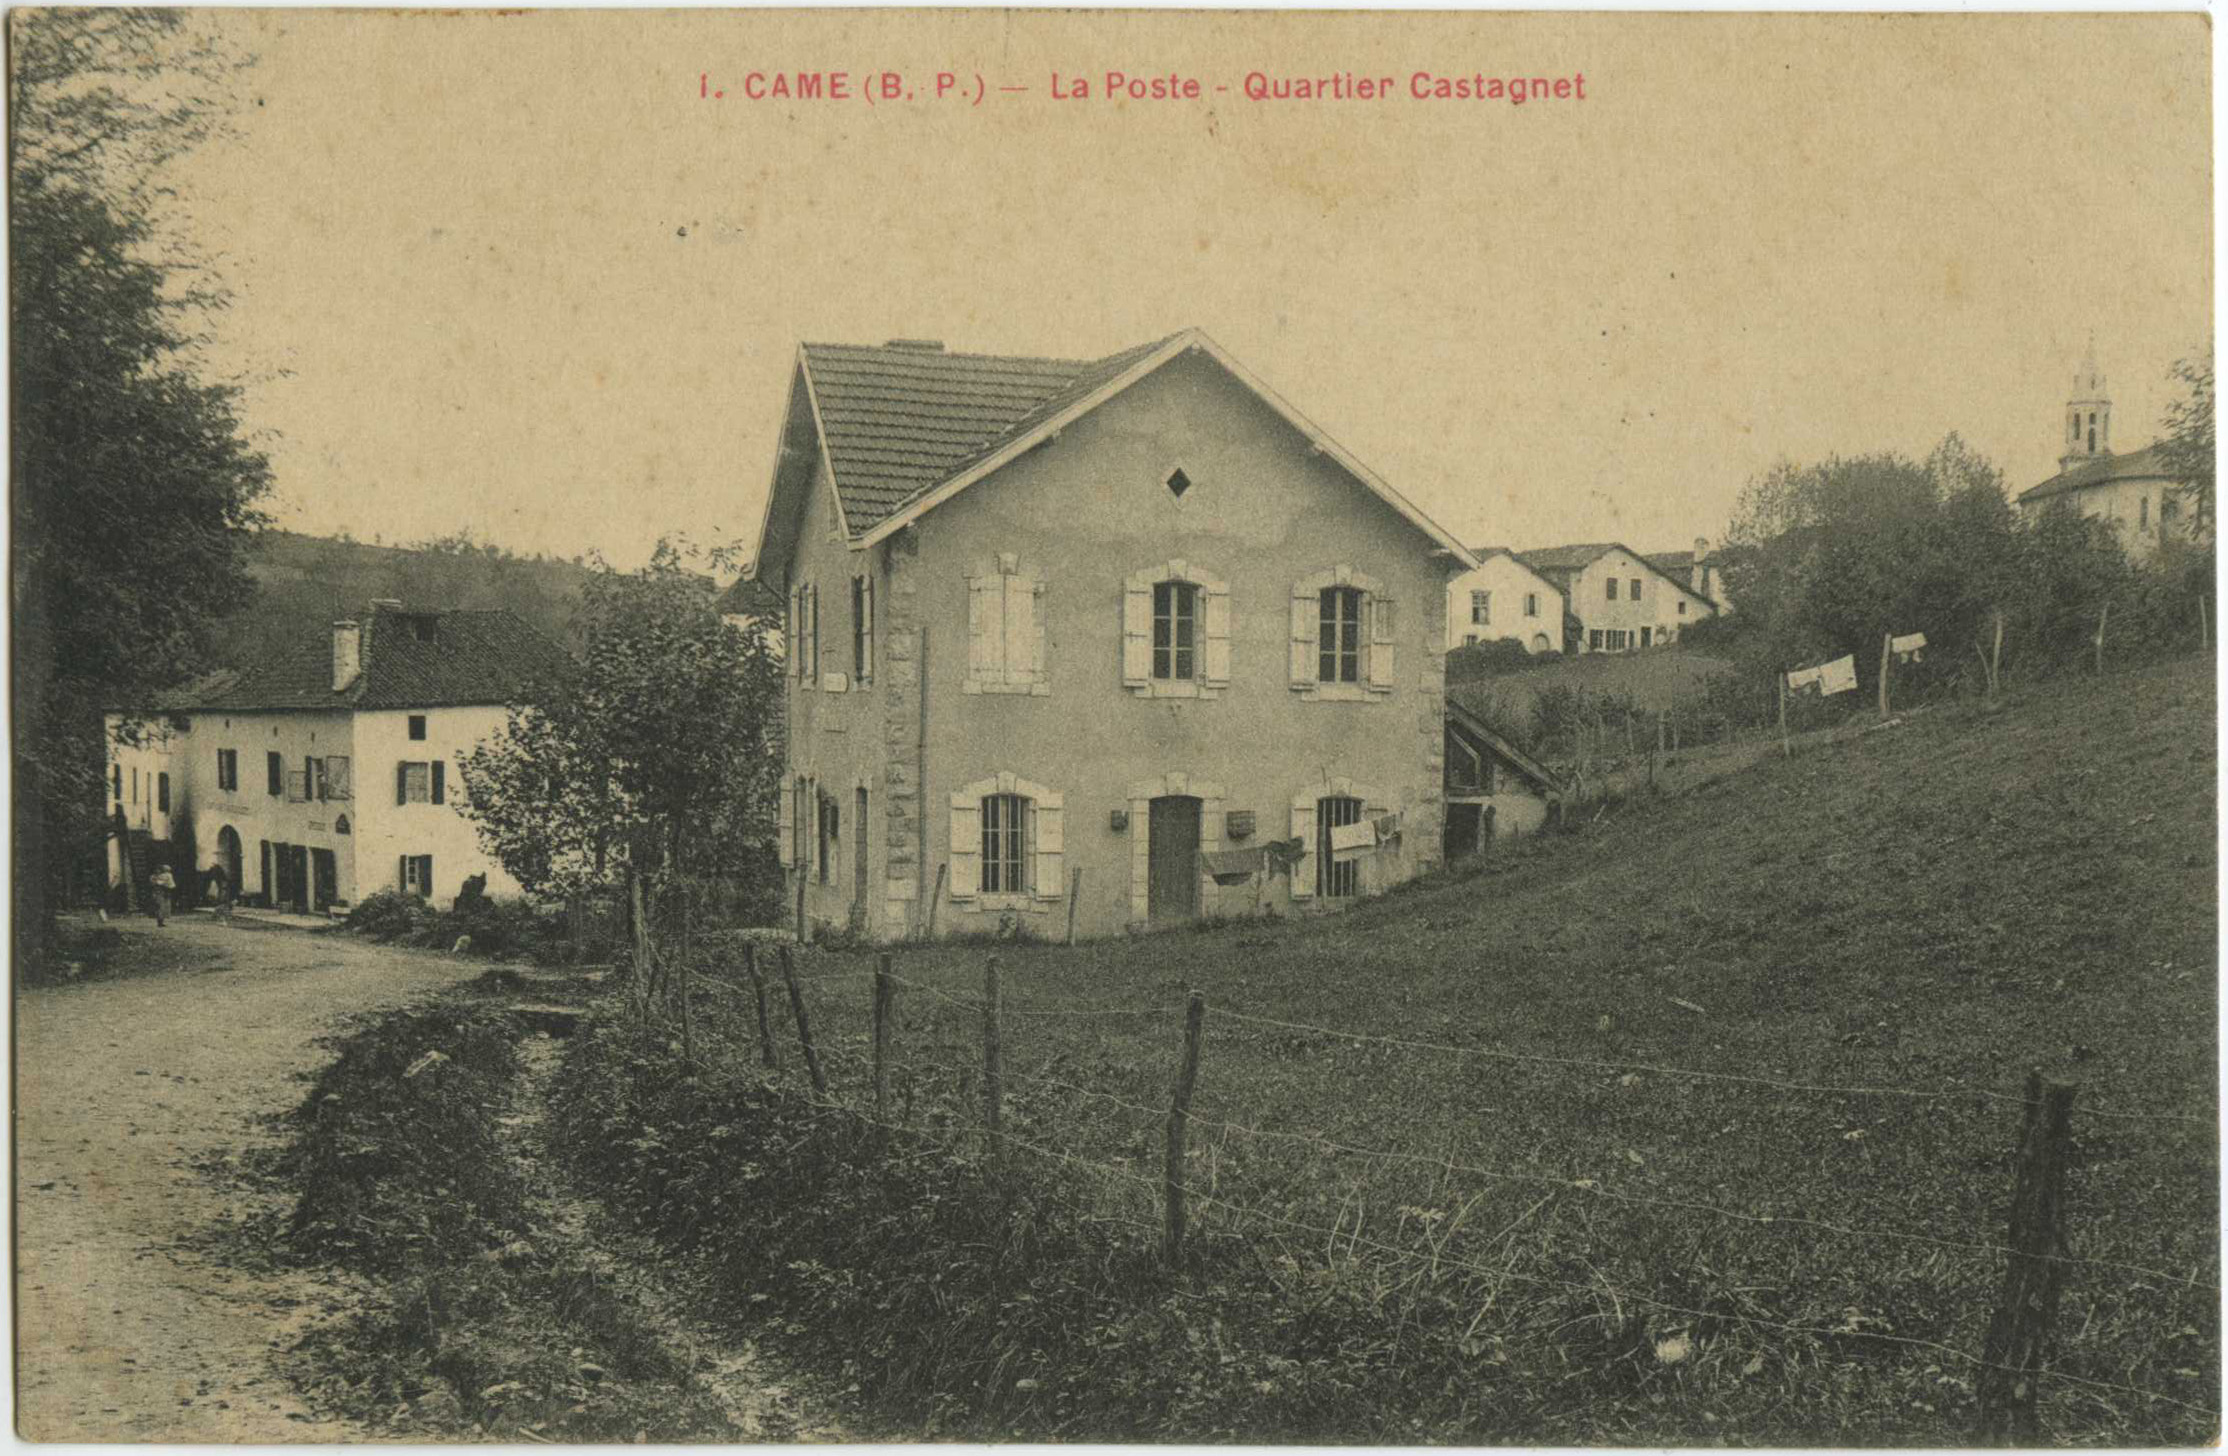 Came - La Poste - Quartier Castagnet